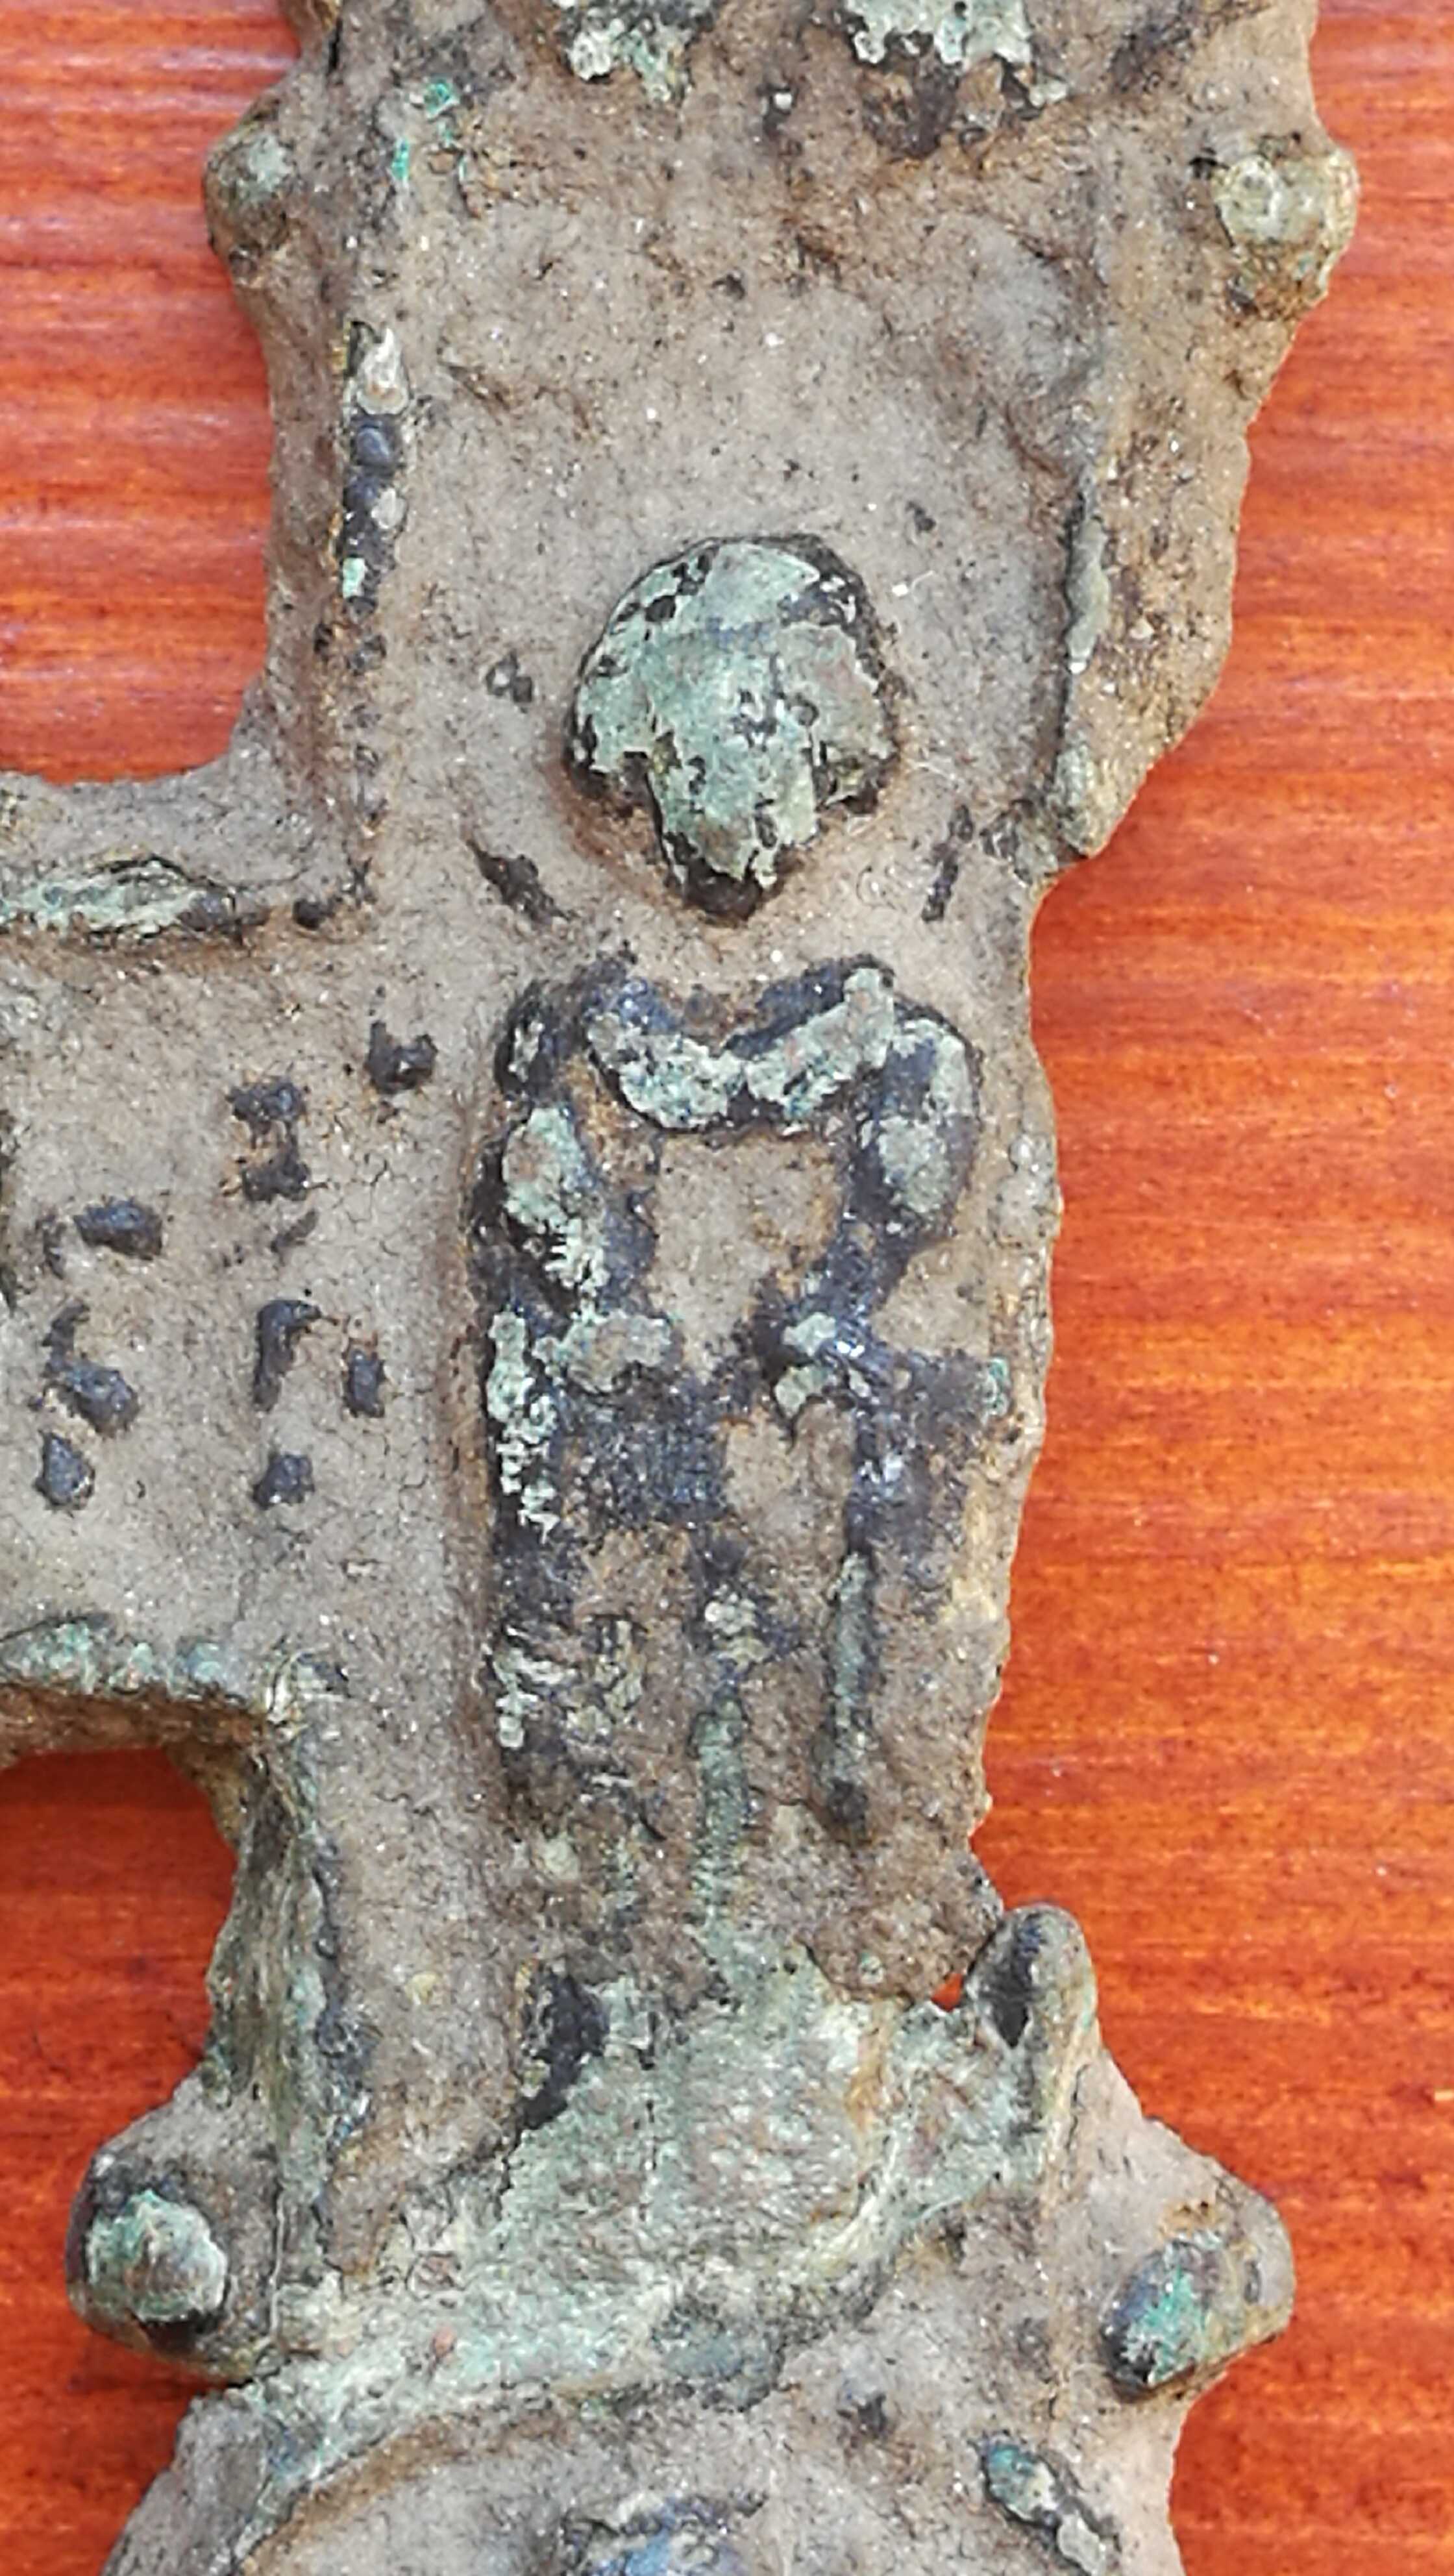 Árpád-kori bronz ereklyetartó mellkereszt töredékes előlapja Turáról